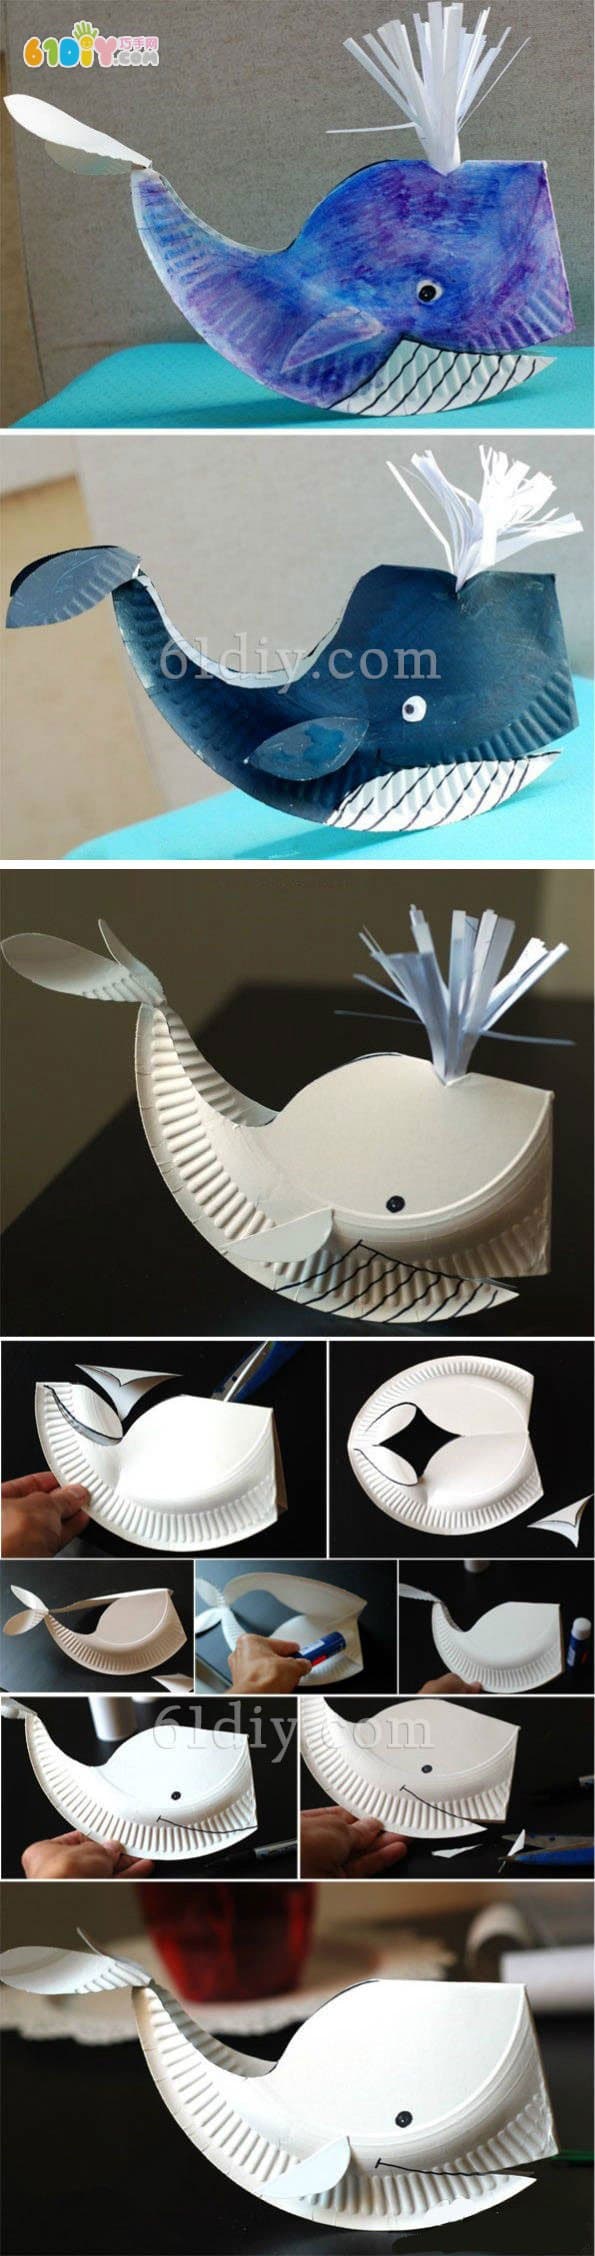 纸盘手工制作立体鲸鱼